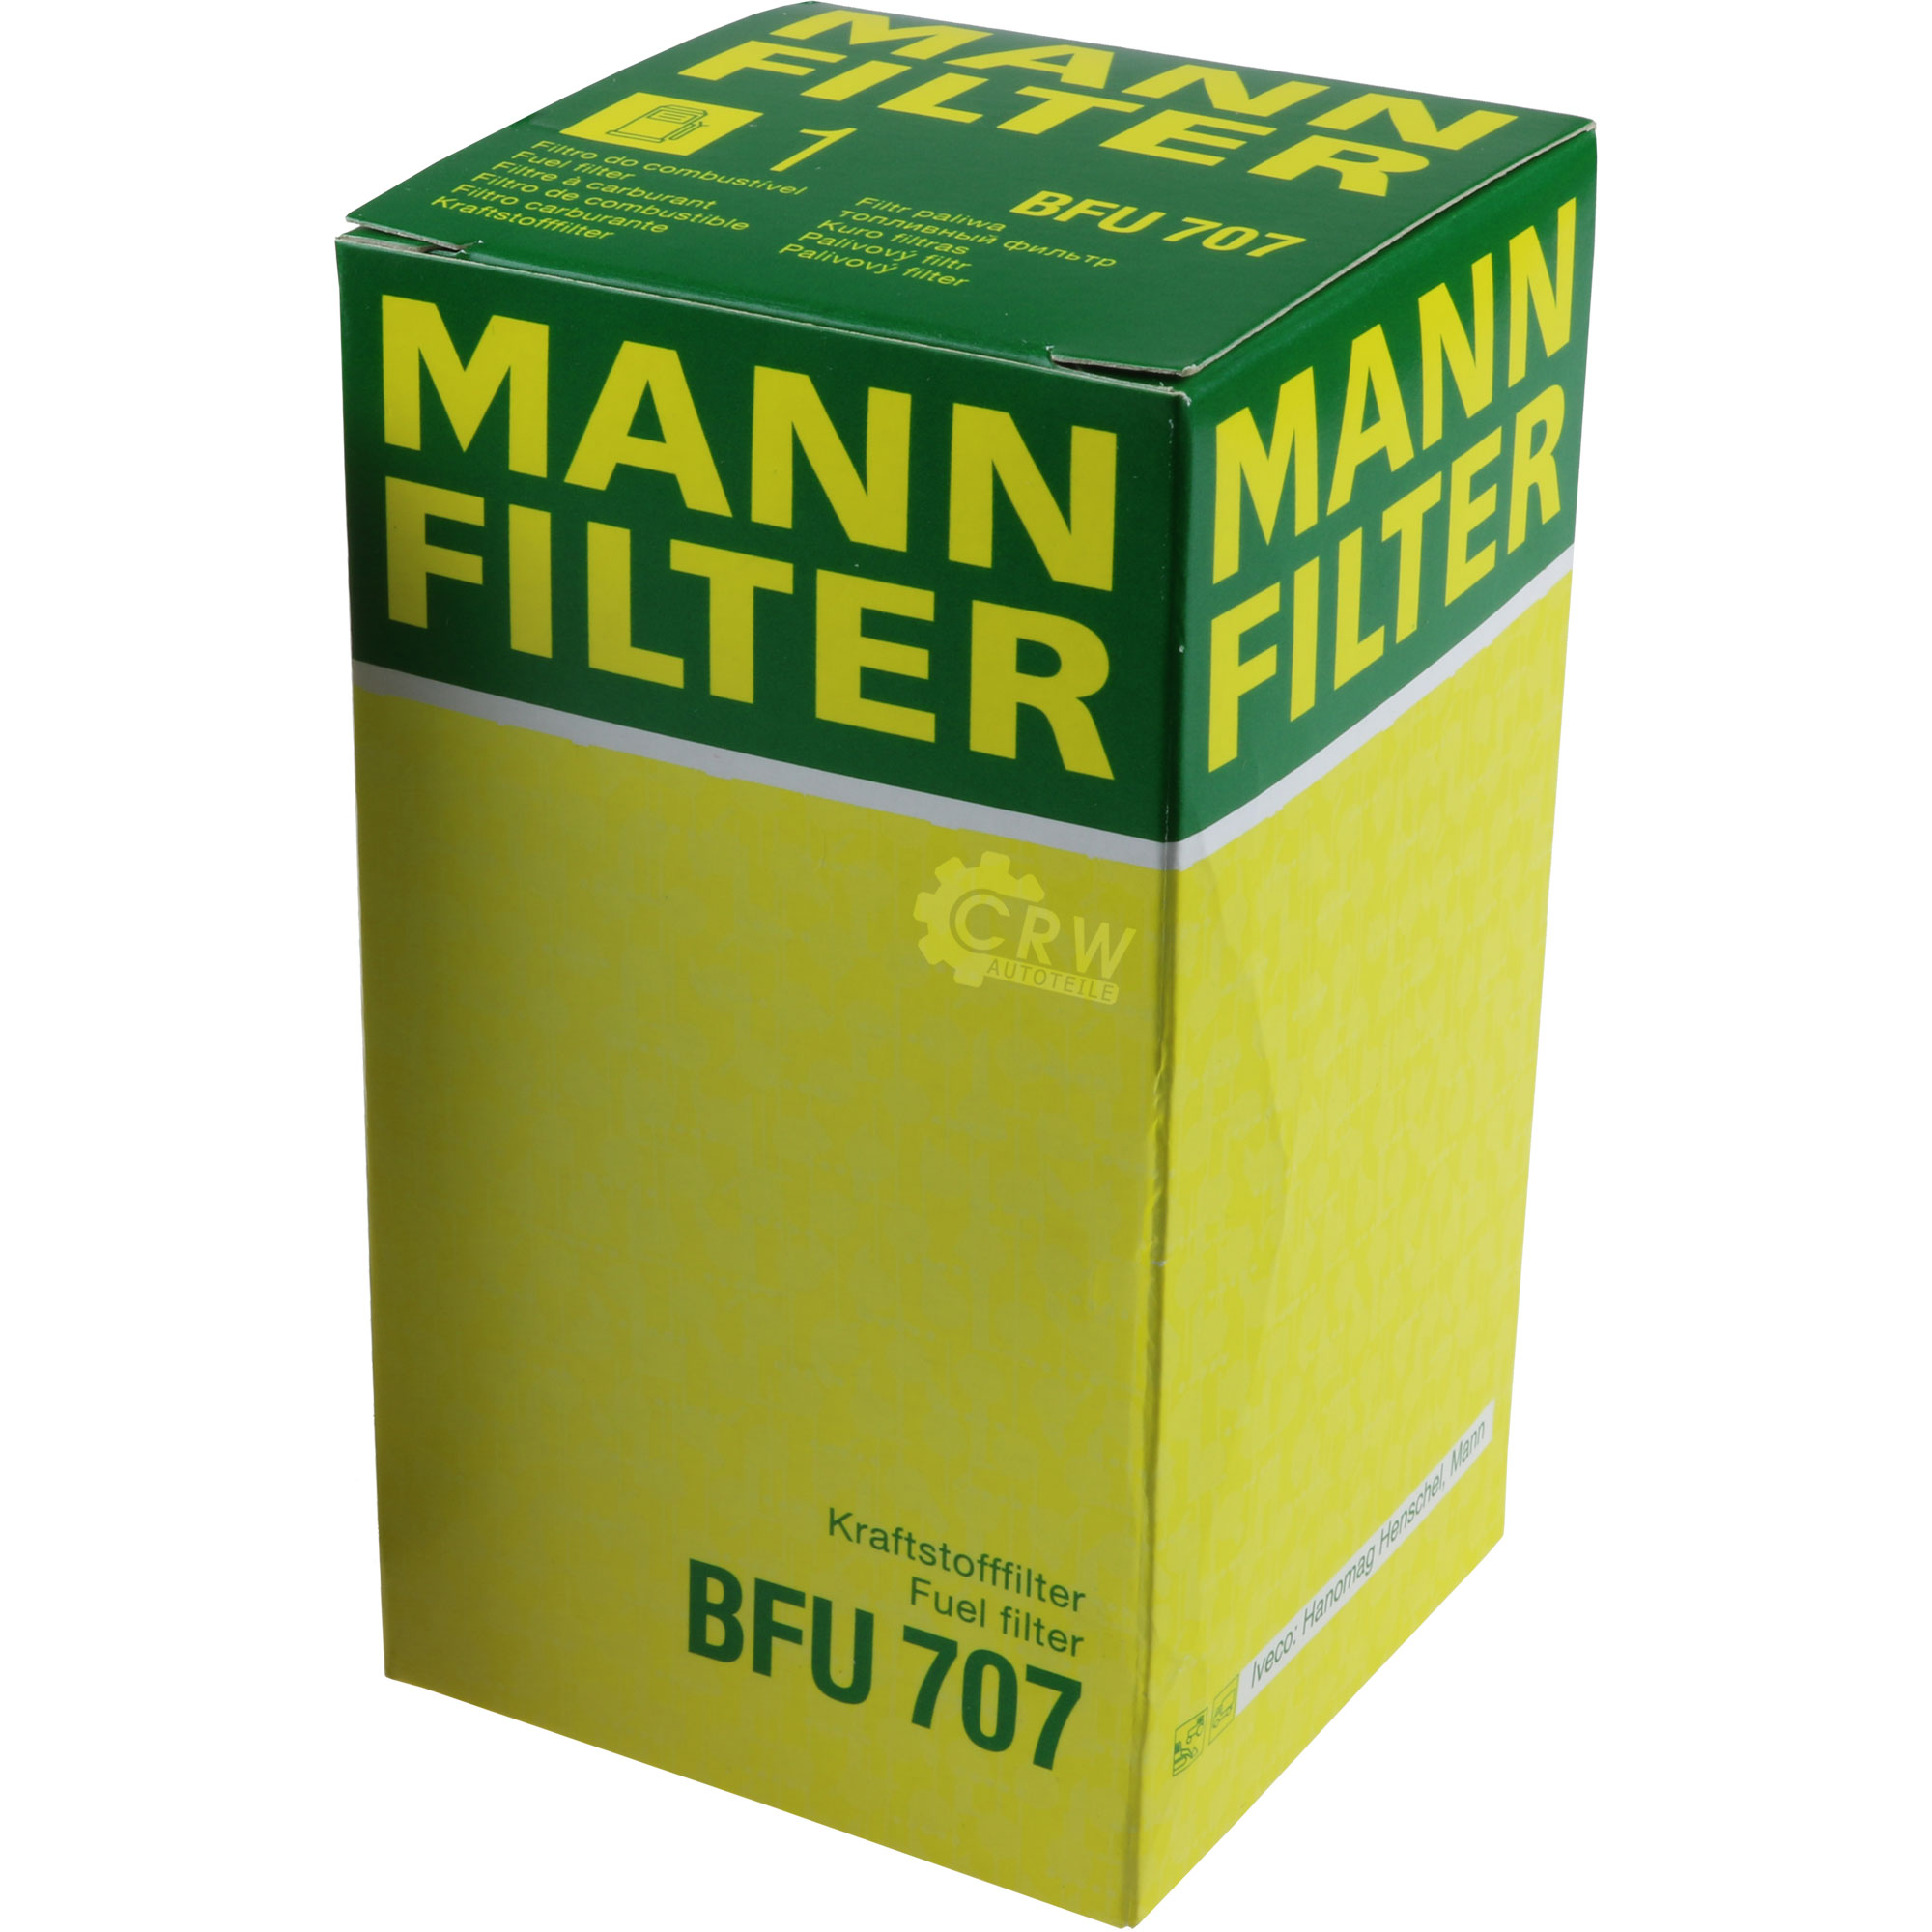 MANN-FILTER Kraftstofffilter BFU 707 Fuel Filter